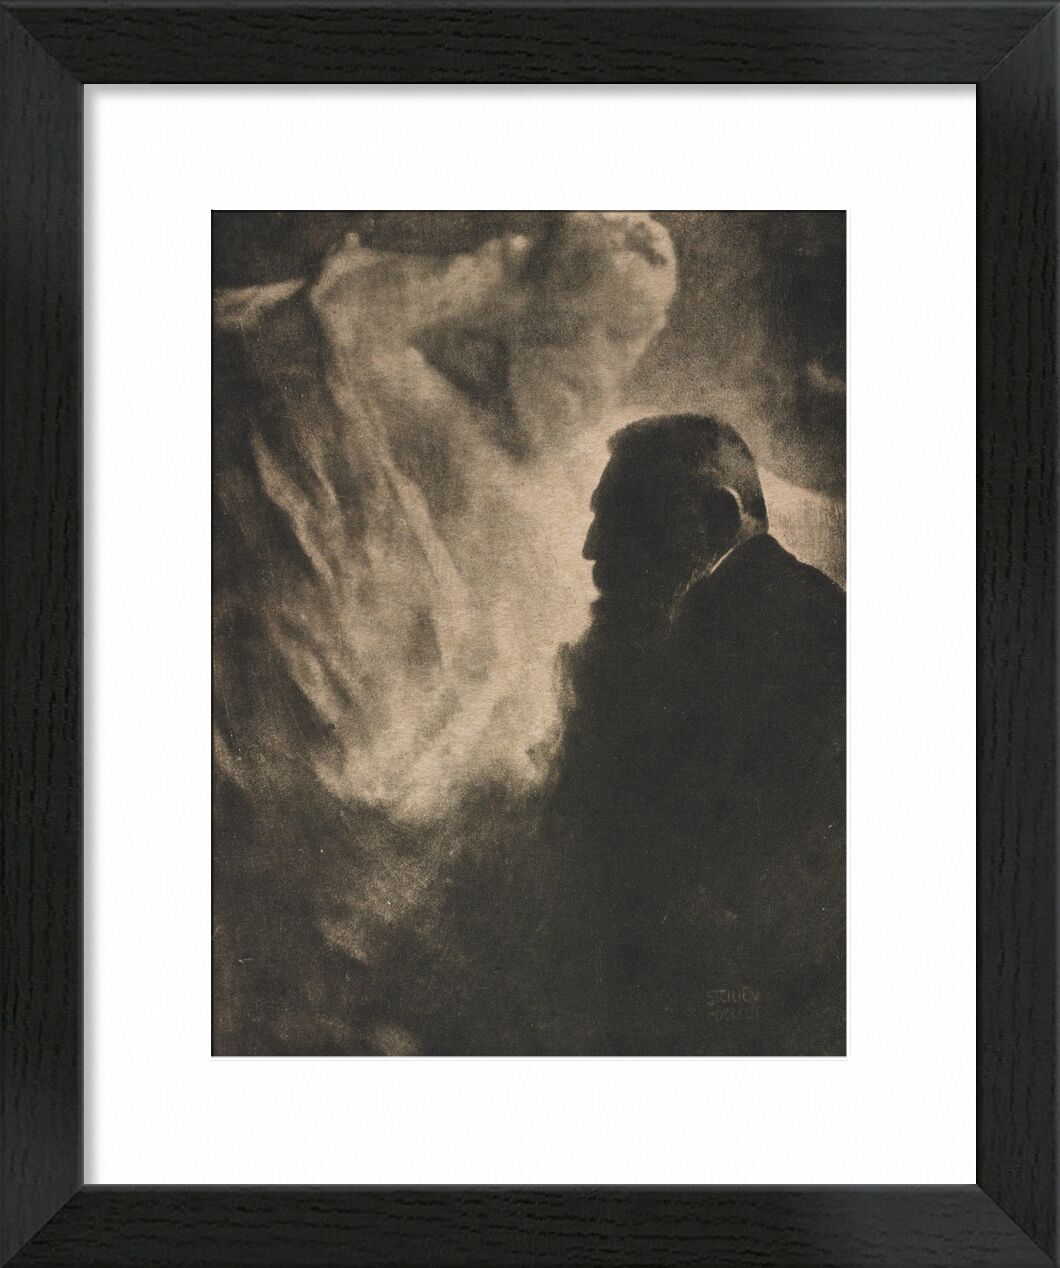 Portrait of Rodin. Photoengraving in Camera Work - Edward Steichen 1902 von Bildende Kunst, Prodi Art, Fotoabend, auguste robin, edward steichen, Schwarz und weiß, Porträt, robin